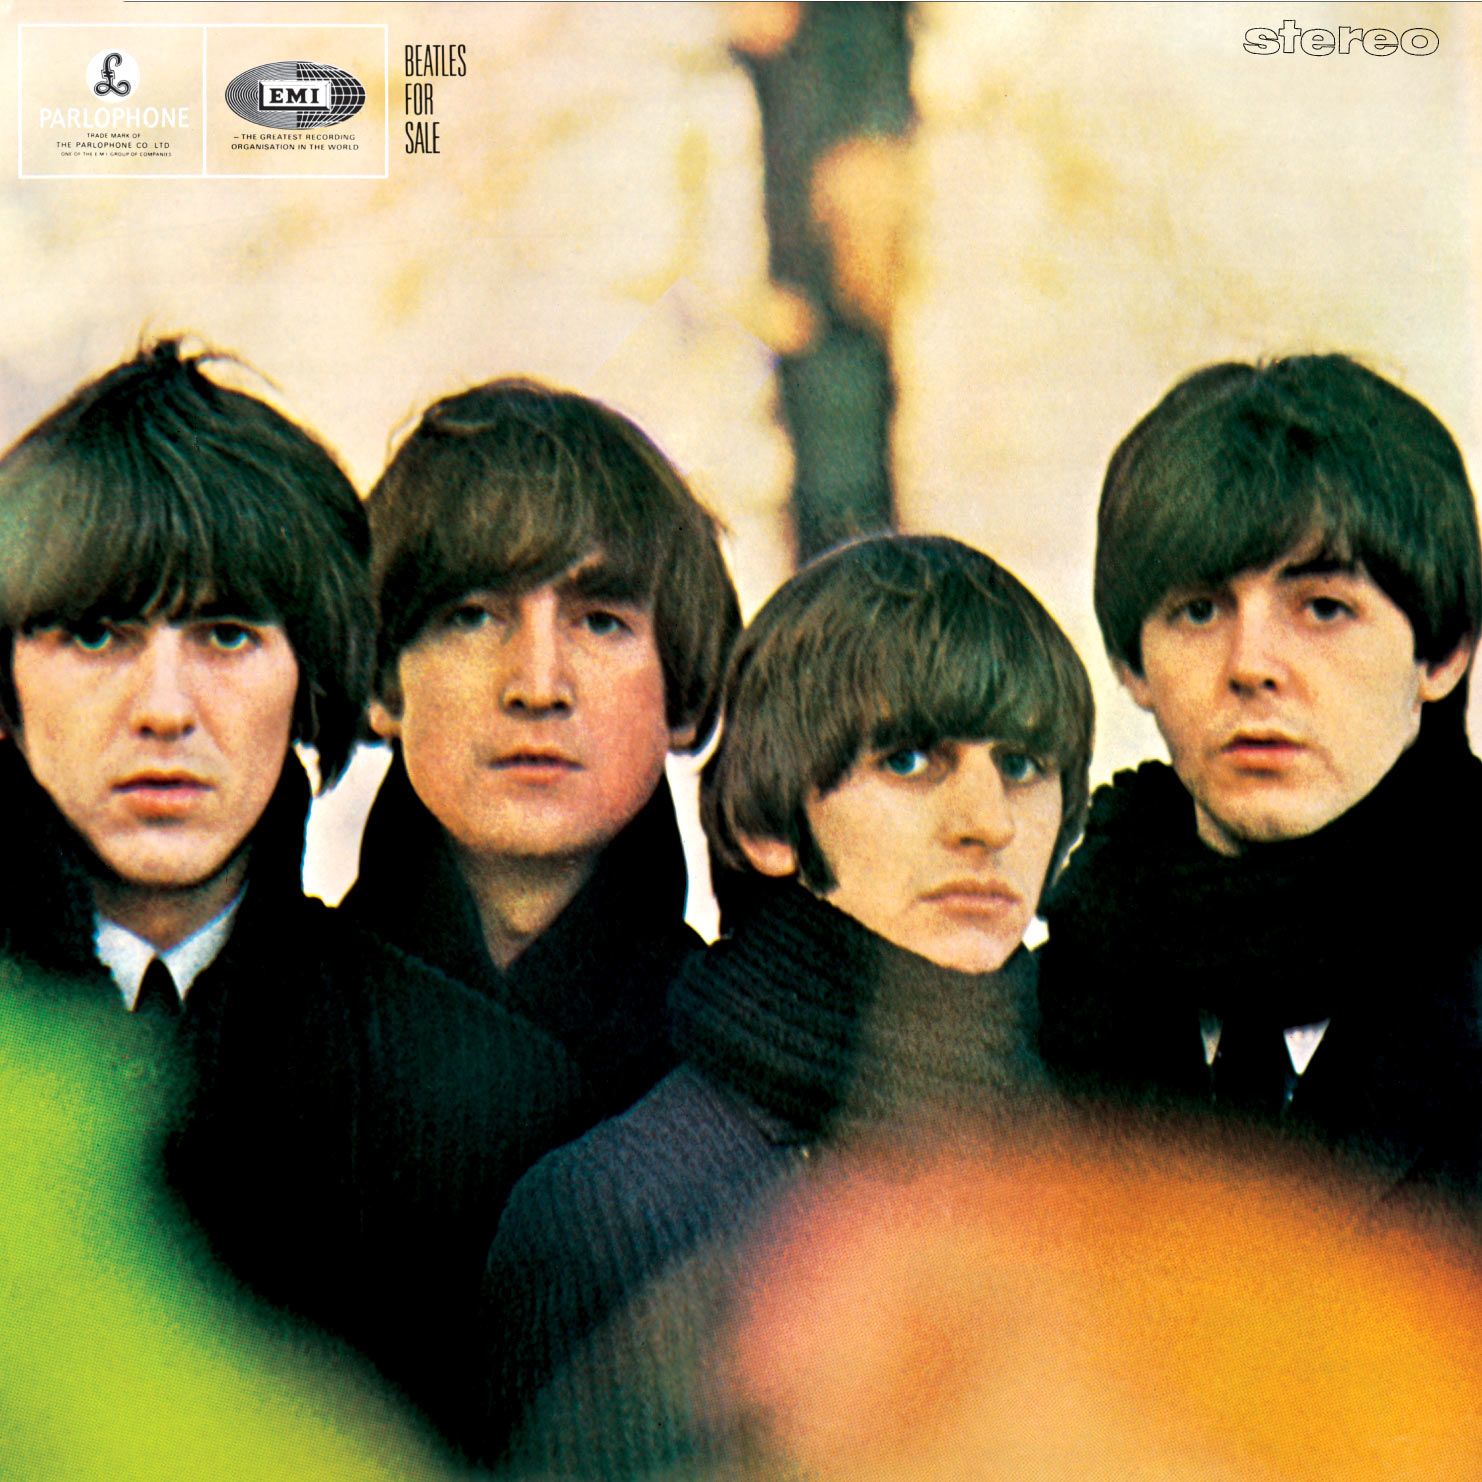 Ranking The Beatles: Beatles For Sale (Beatles Week 2016 Day 11)